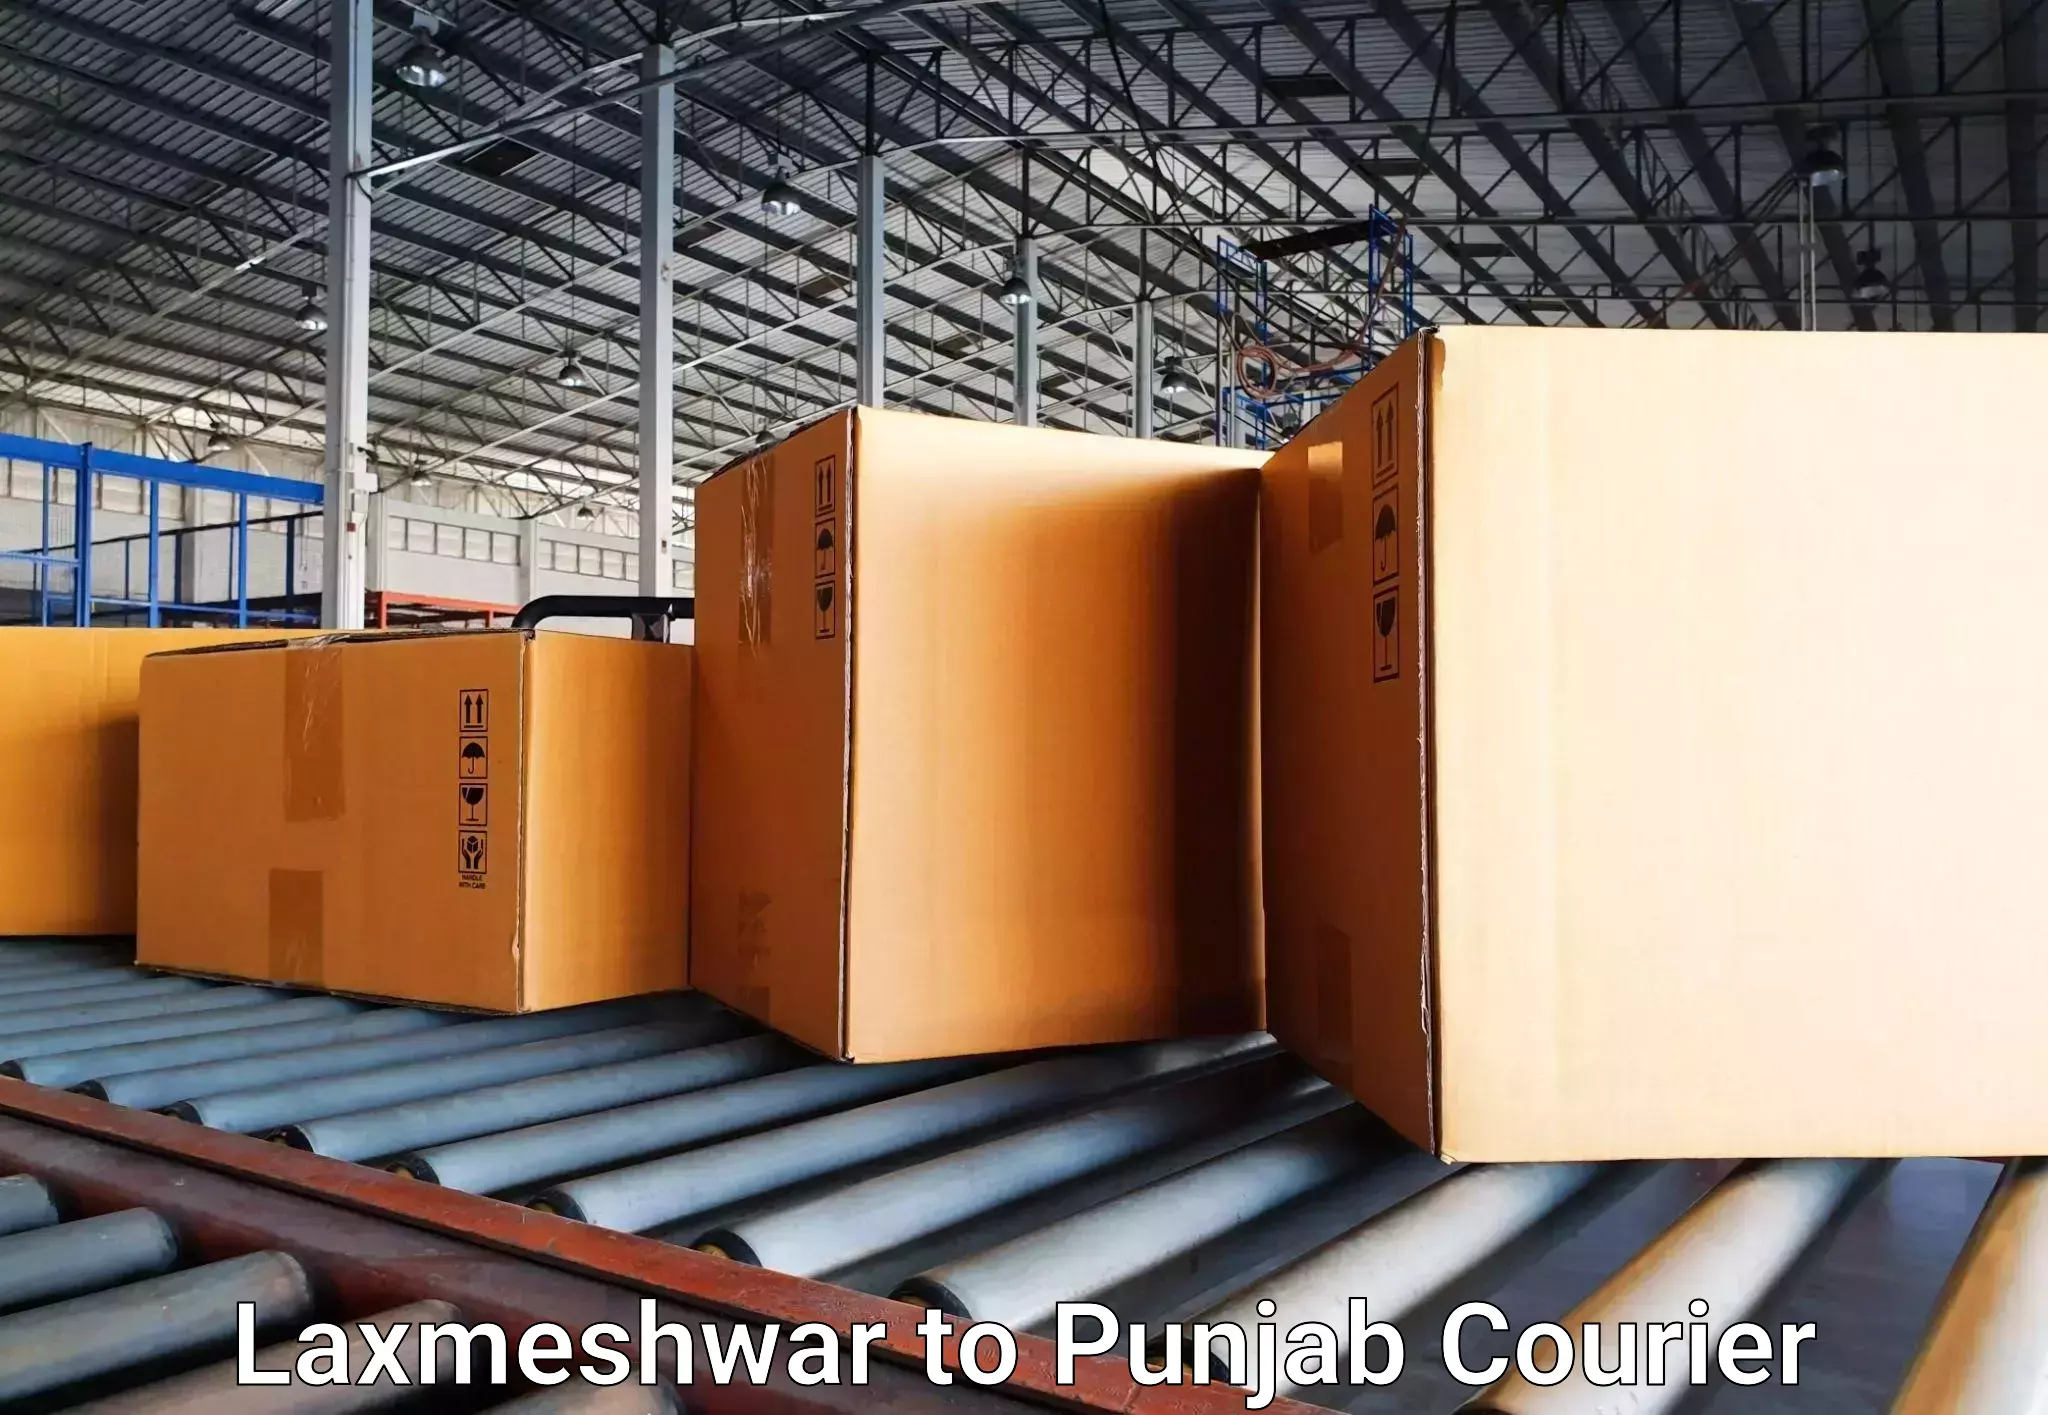 Urgent luggage shipment Laxmeshwar to Central University of Punjab Bathinda